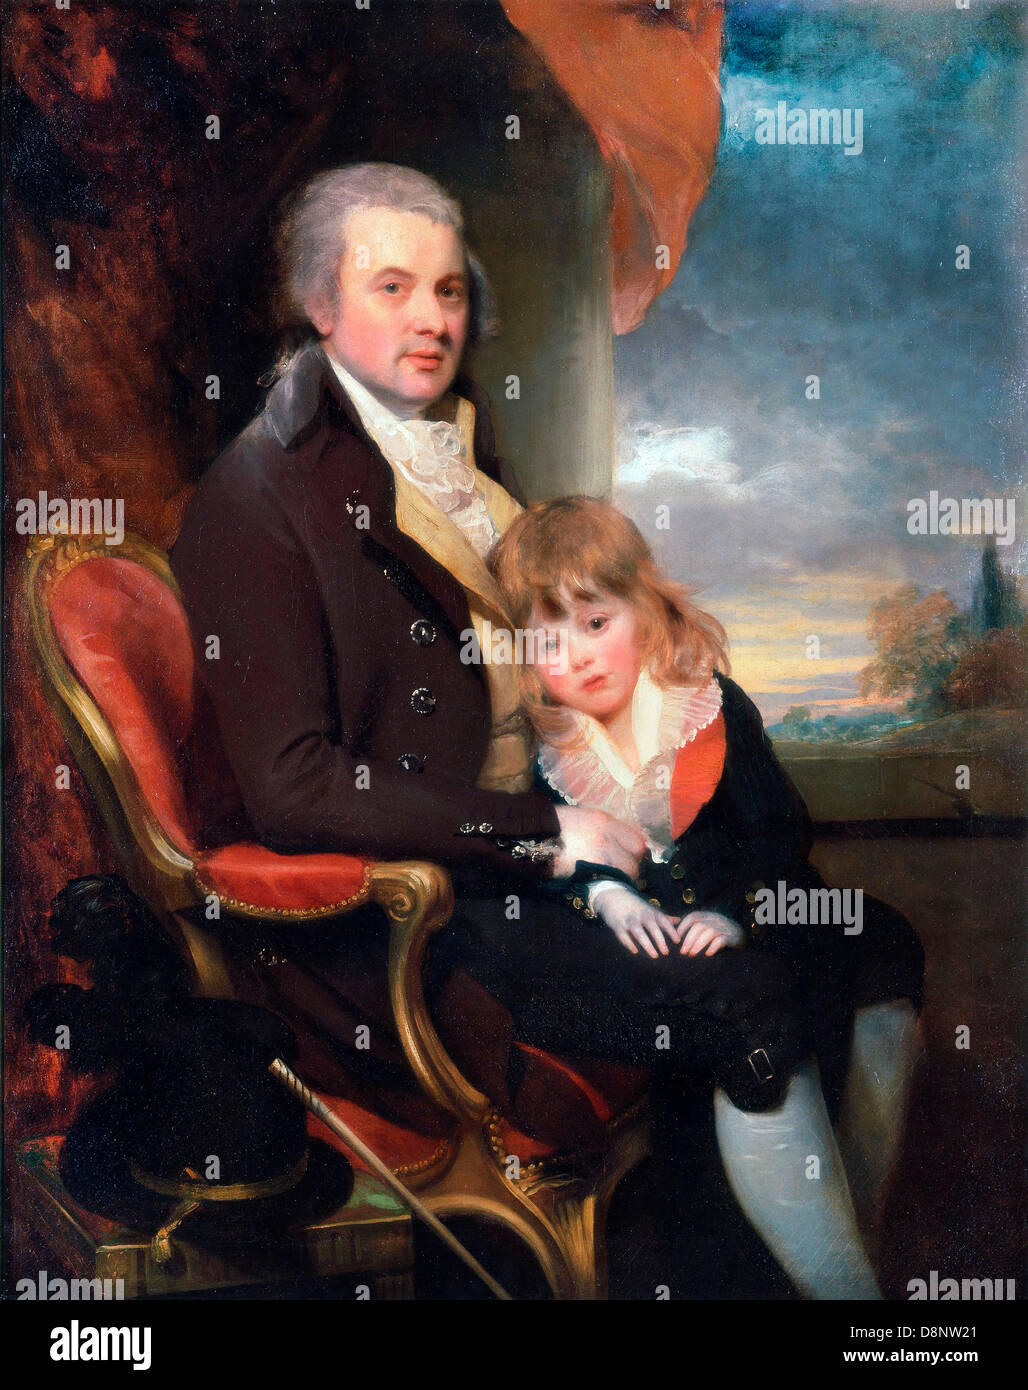 Sir William Beechey, Edward George Lind und sein Sohn, Montague. Um 1800. Öl auf Leinwand. Yale Center for British Art, New Haven Stockfoto